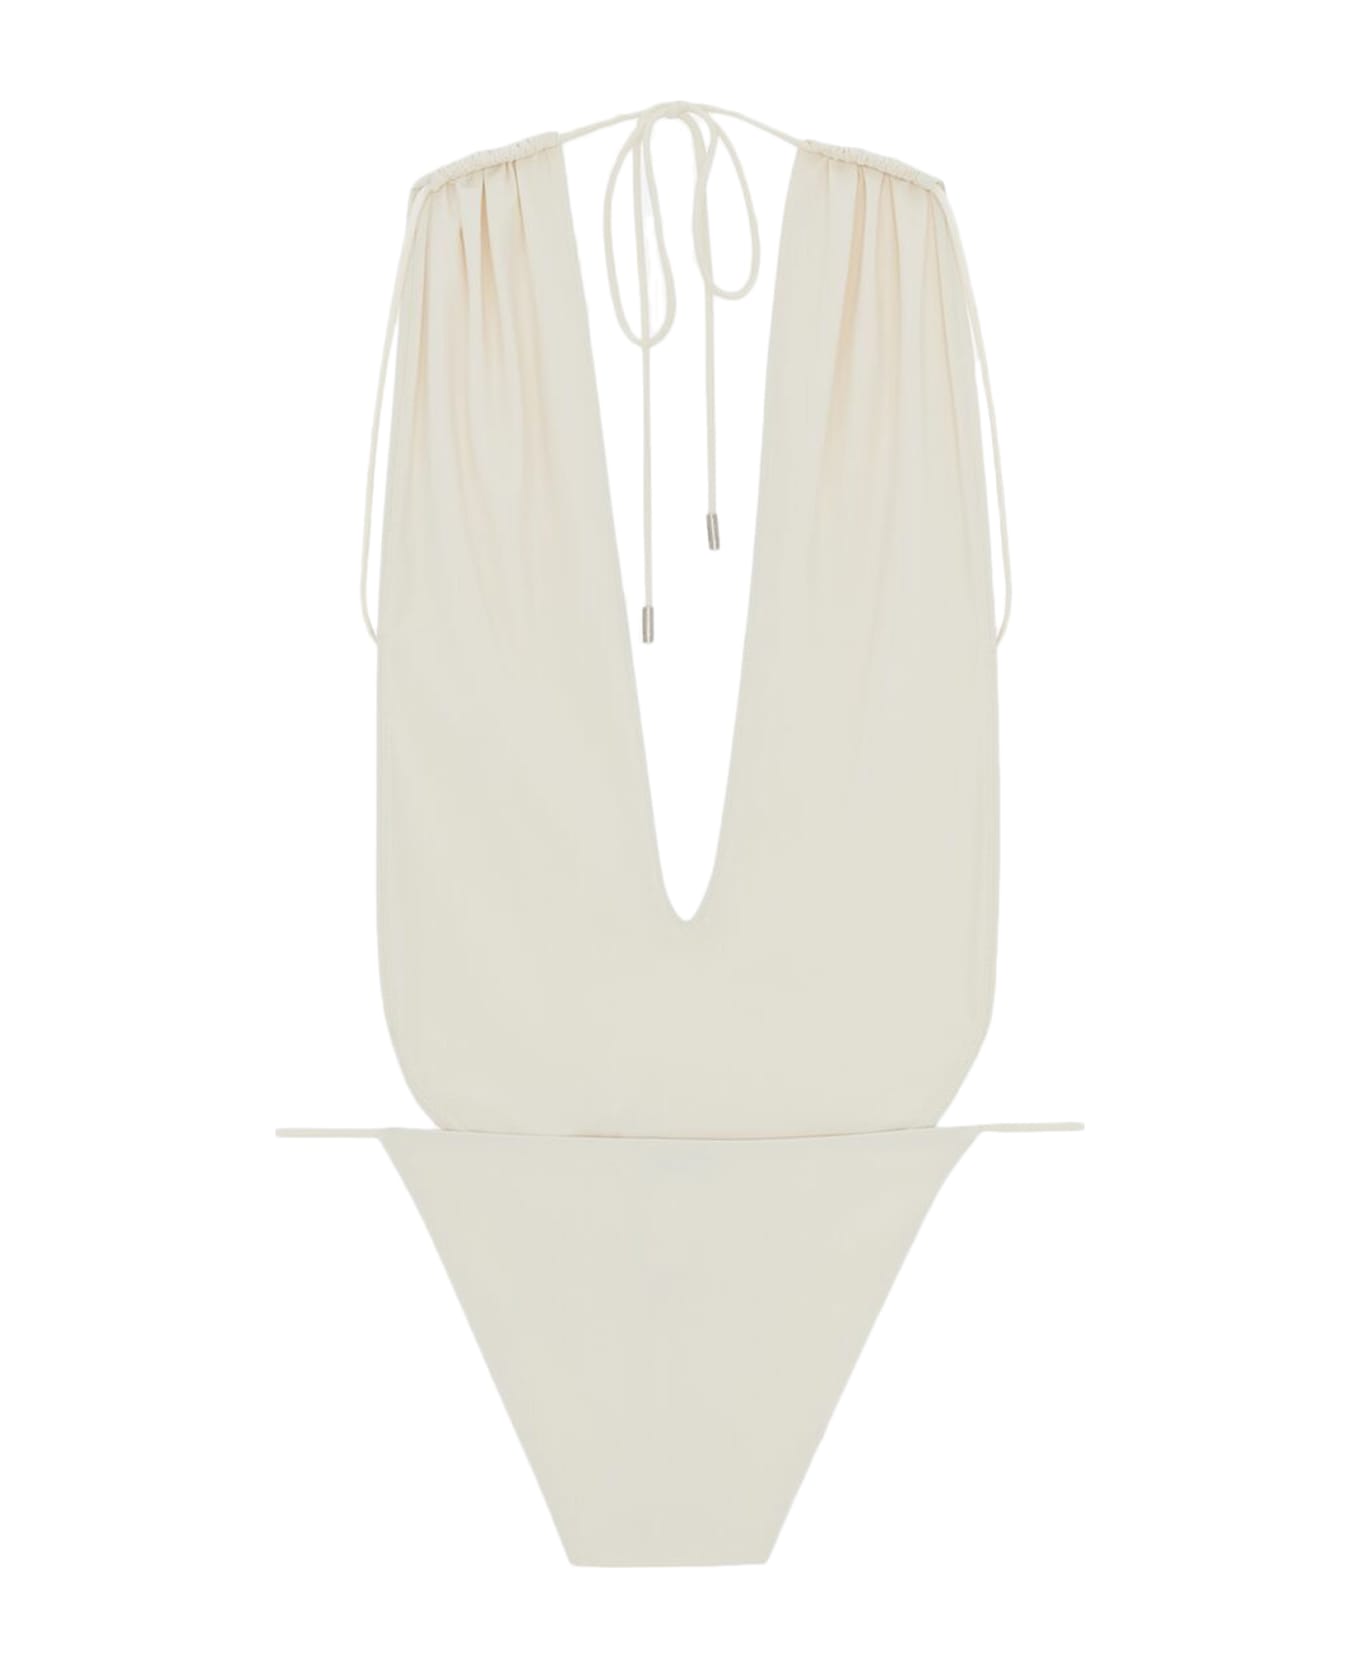 Saint Laurent High-leg One-piece Swimsuit - Blanc Creme